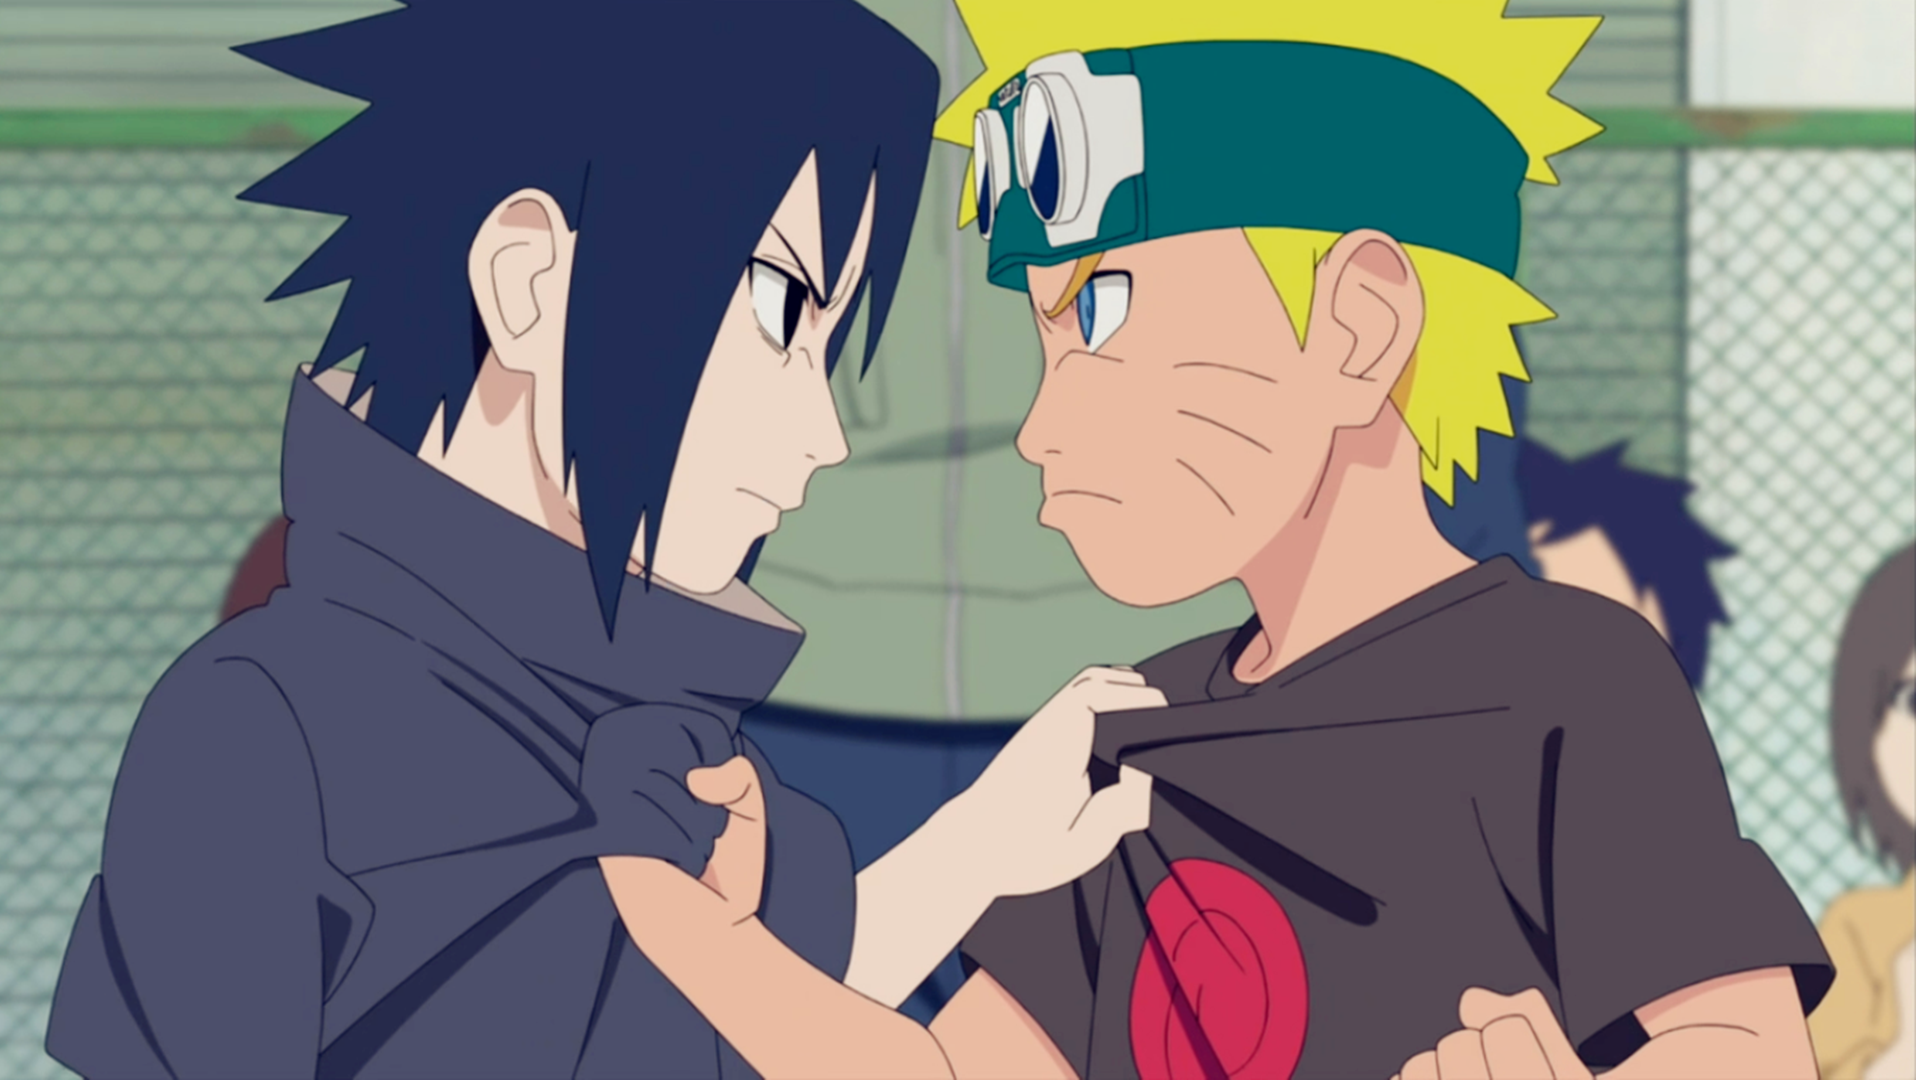 Afinal, o pai do Naruto era mais forte do que o pai do Sasuke em